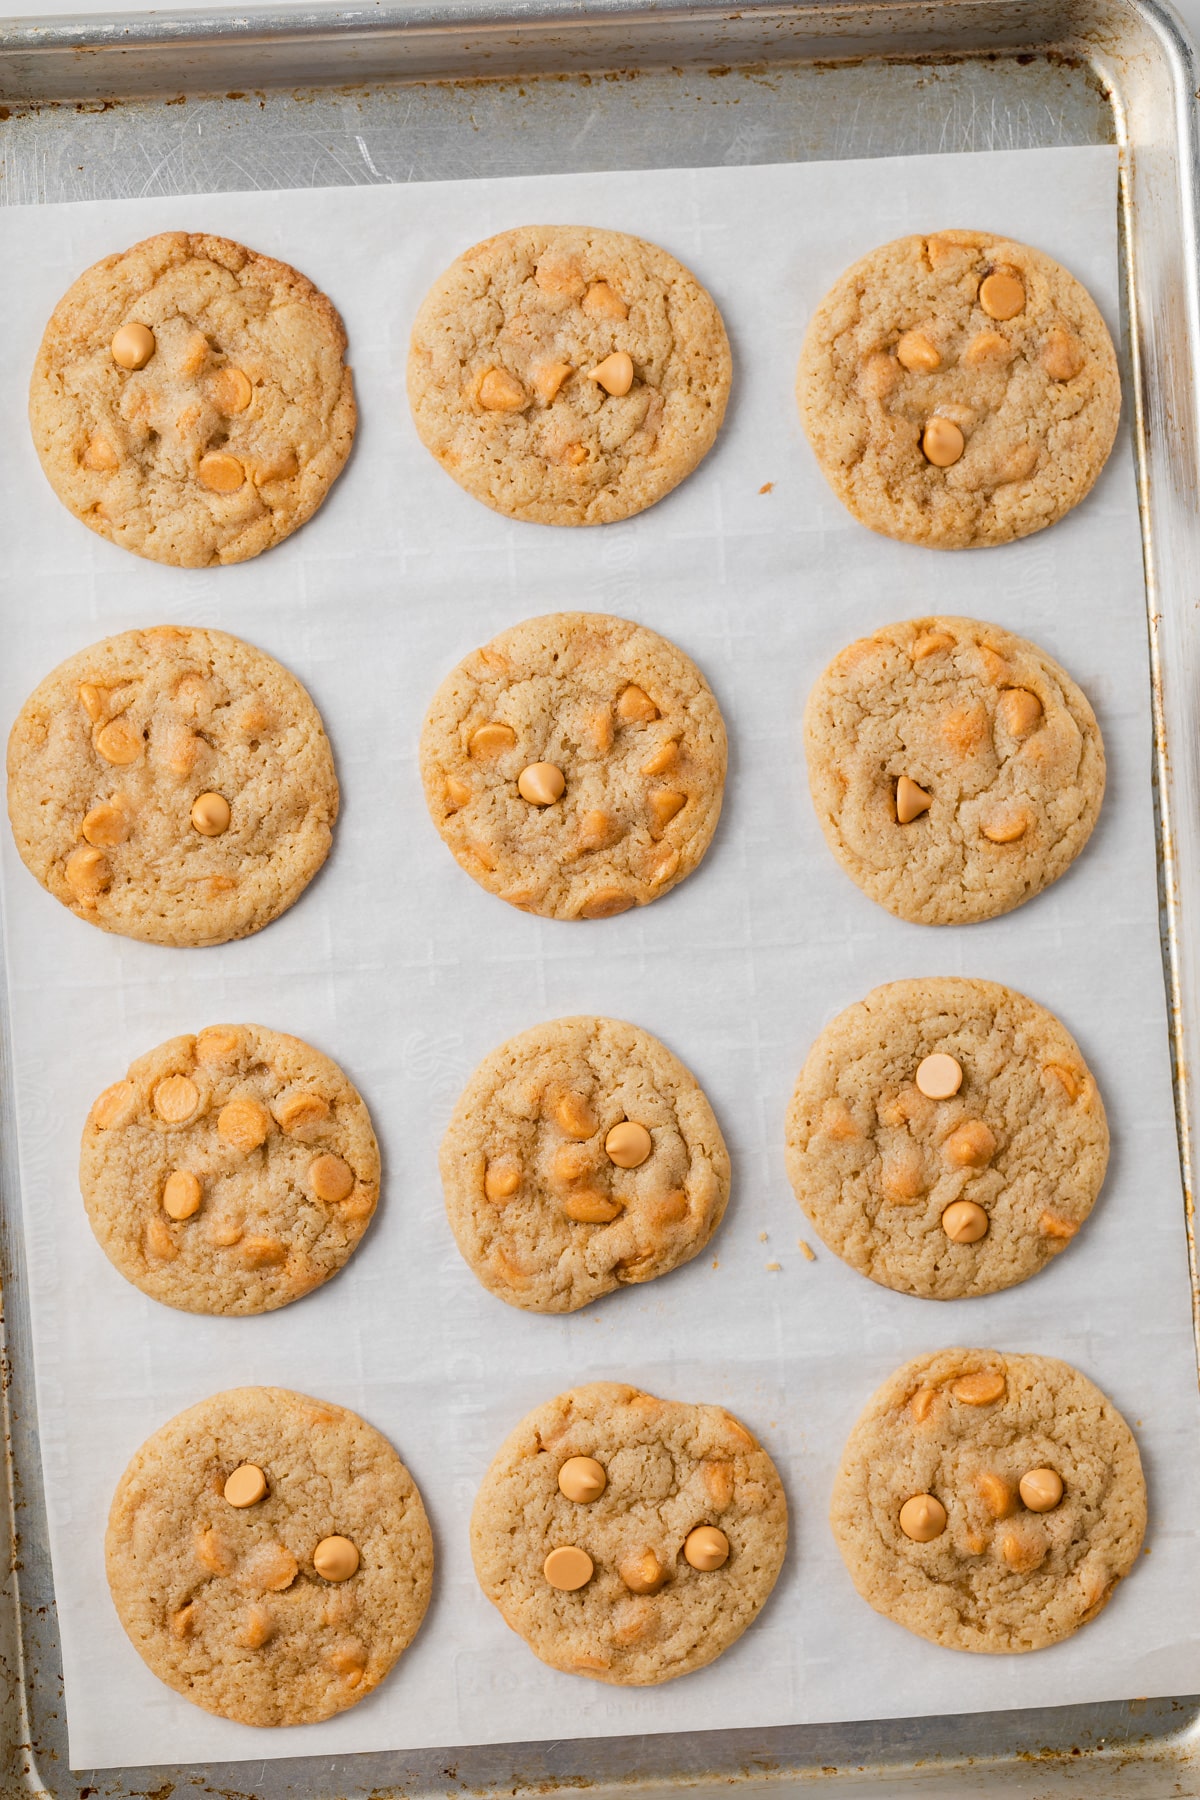 Butterscotch cookies on a baking sheet.